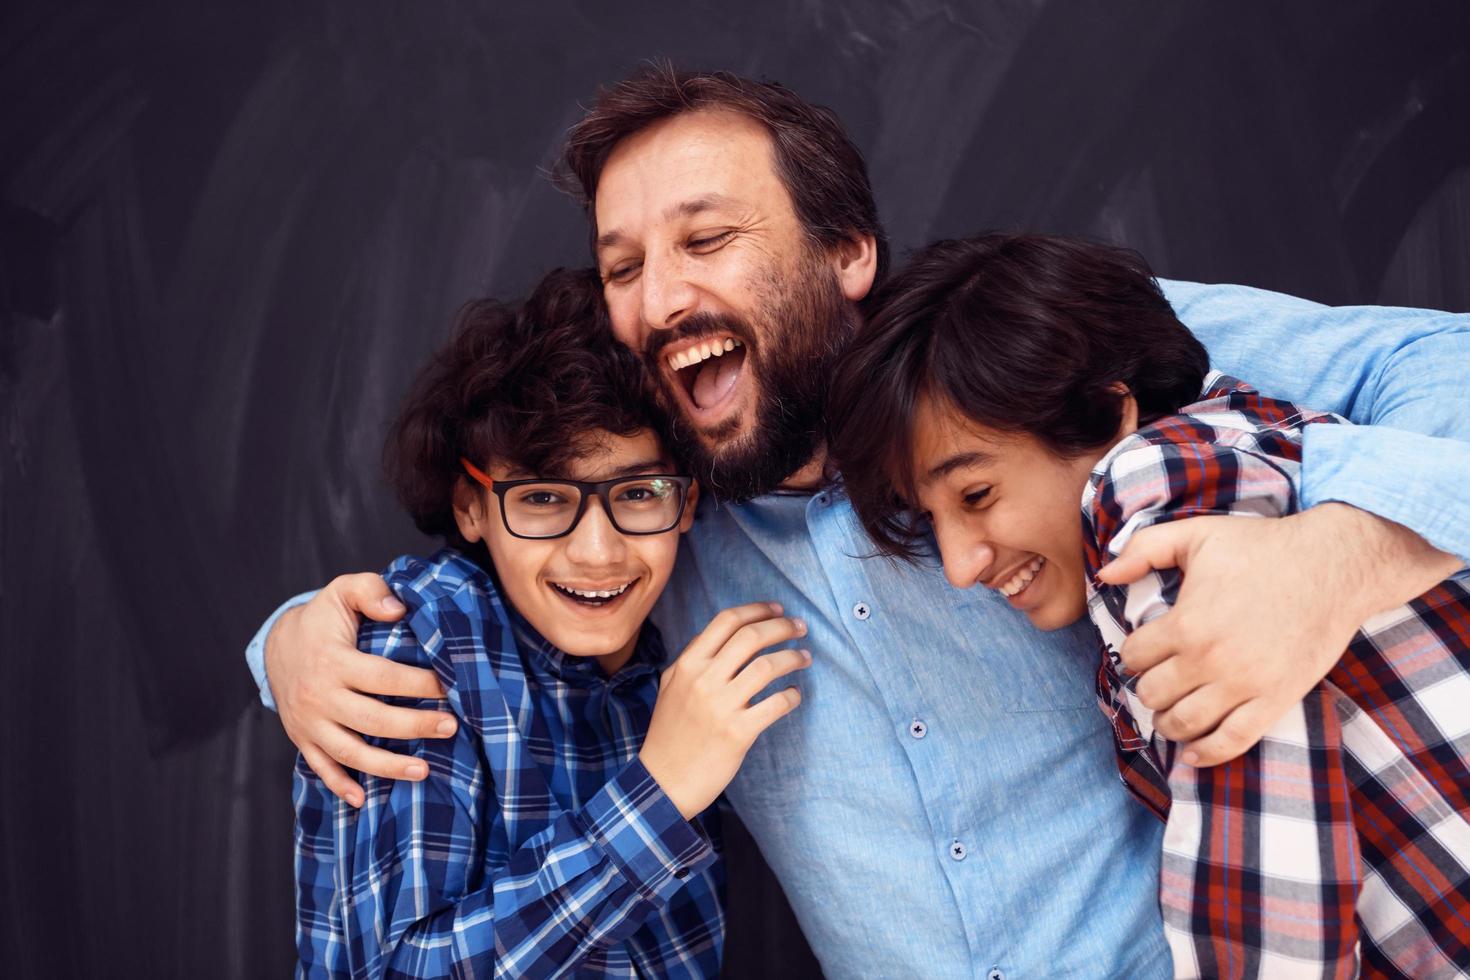 pai feliz abraçando filhos momentos inesquecíveis de alegria familiar na família árabe do oriente médio de raça mista foto